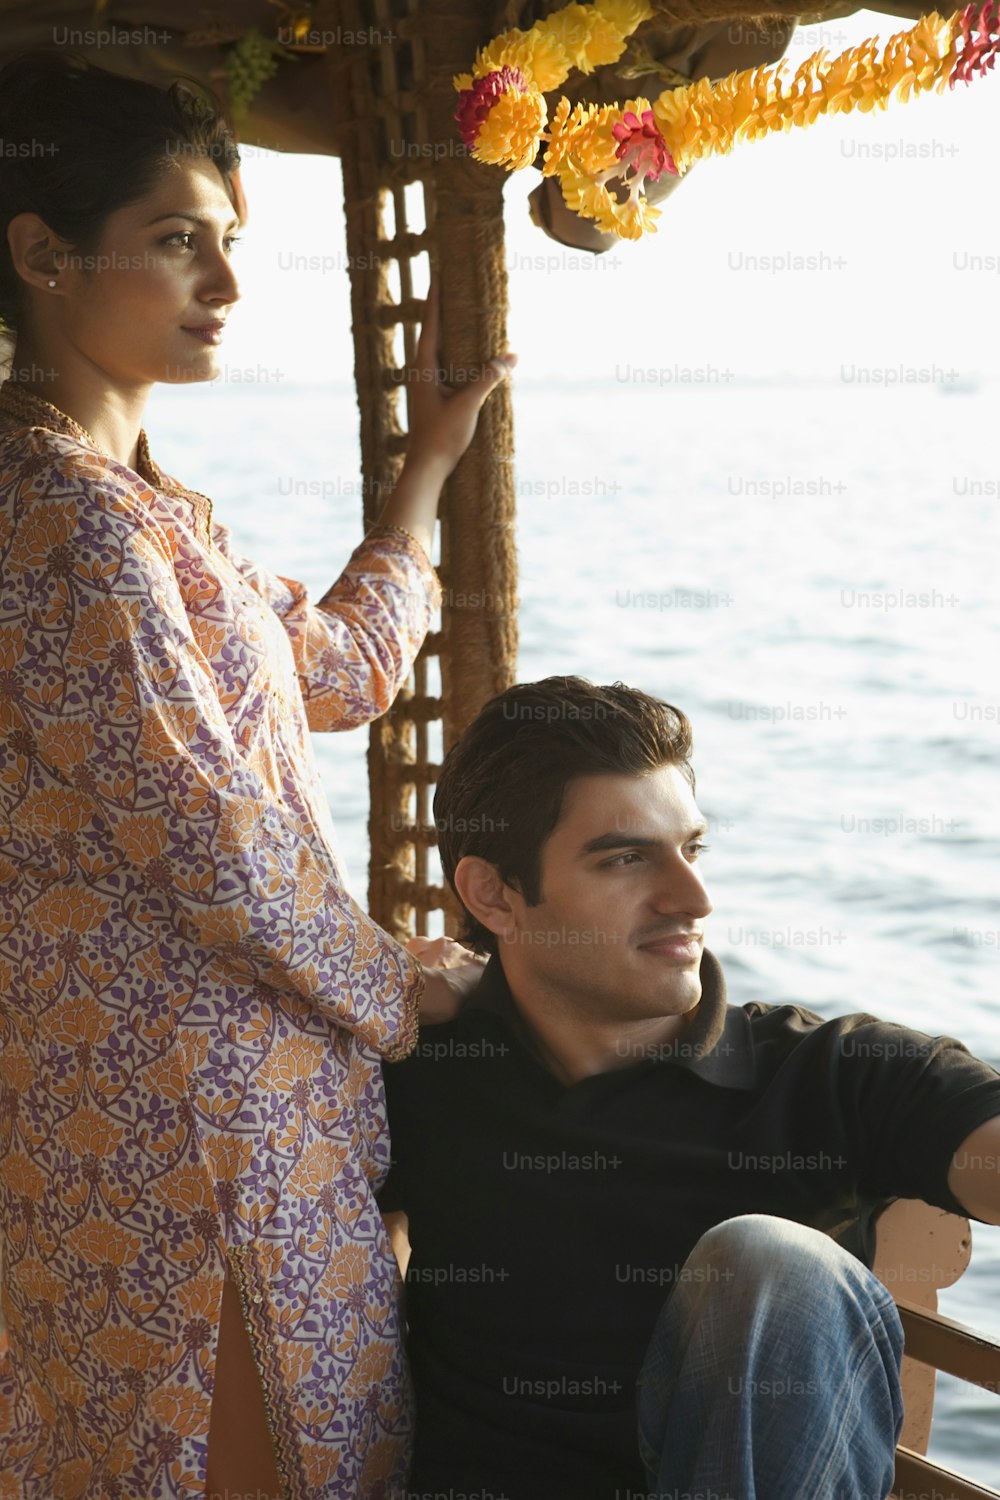 Un hombre sentado junto a una mujer en un bote